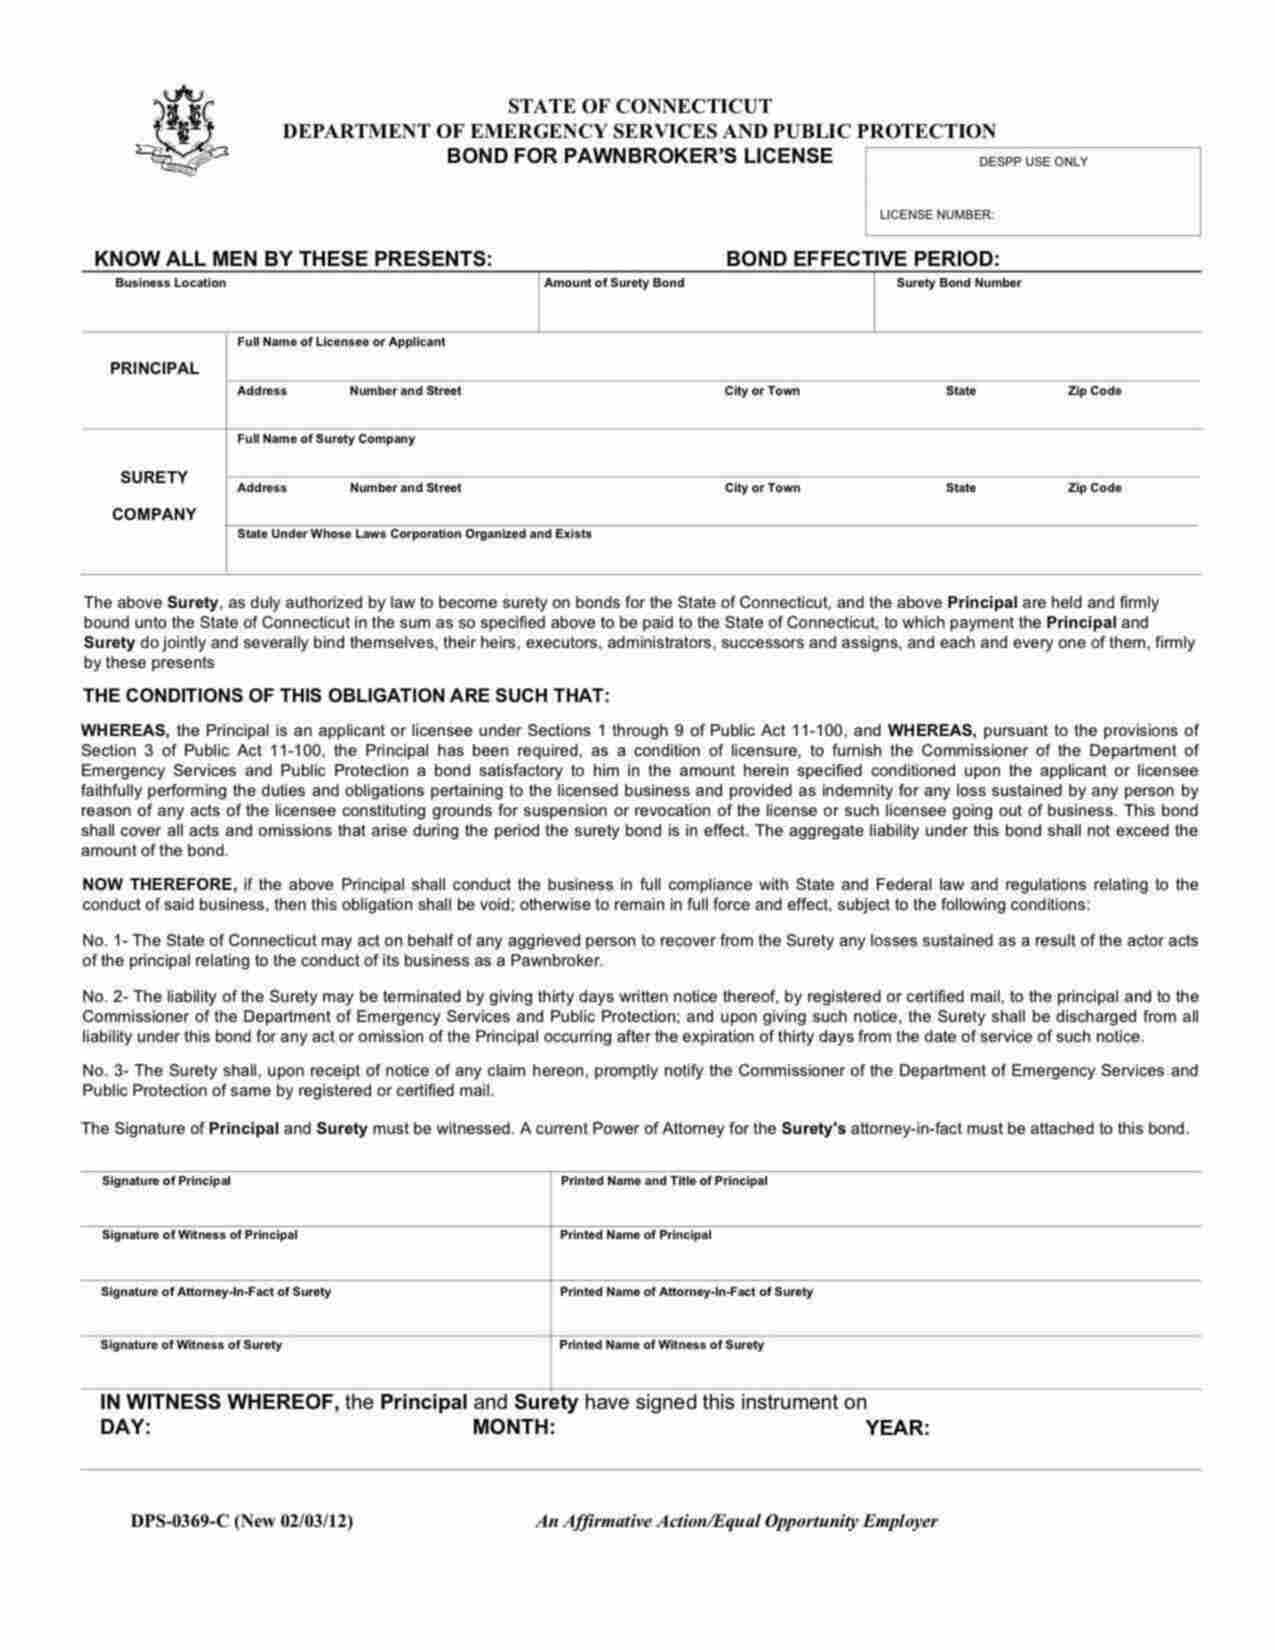 Connecticut Pawnbroker's License Bond Form